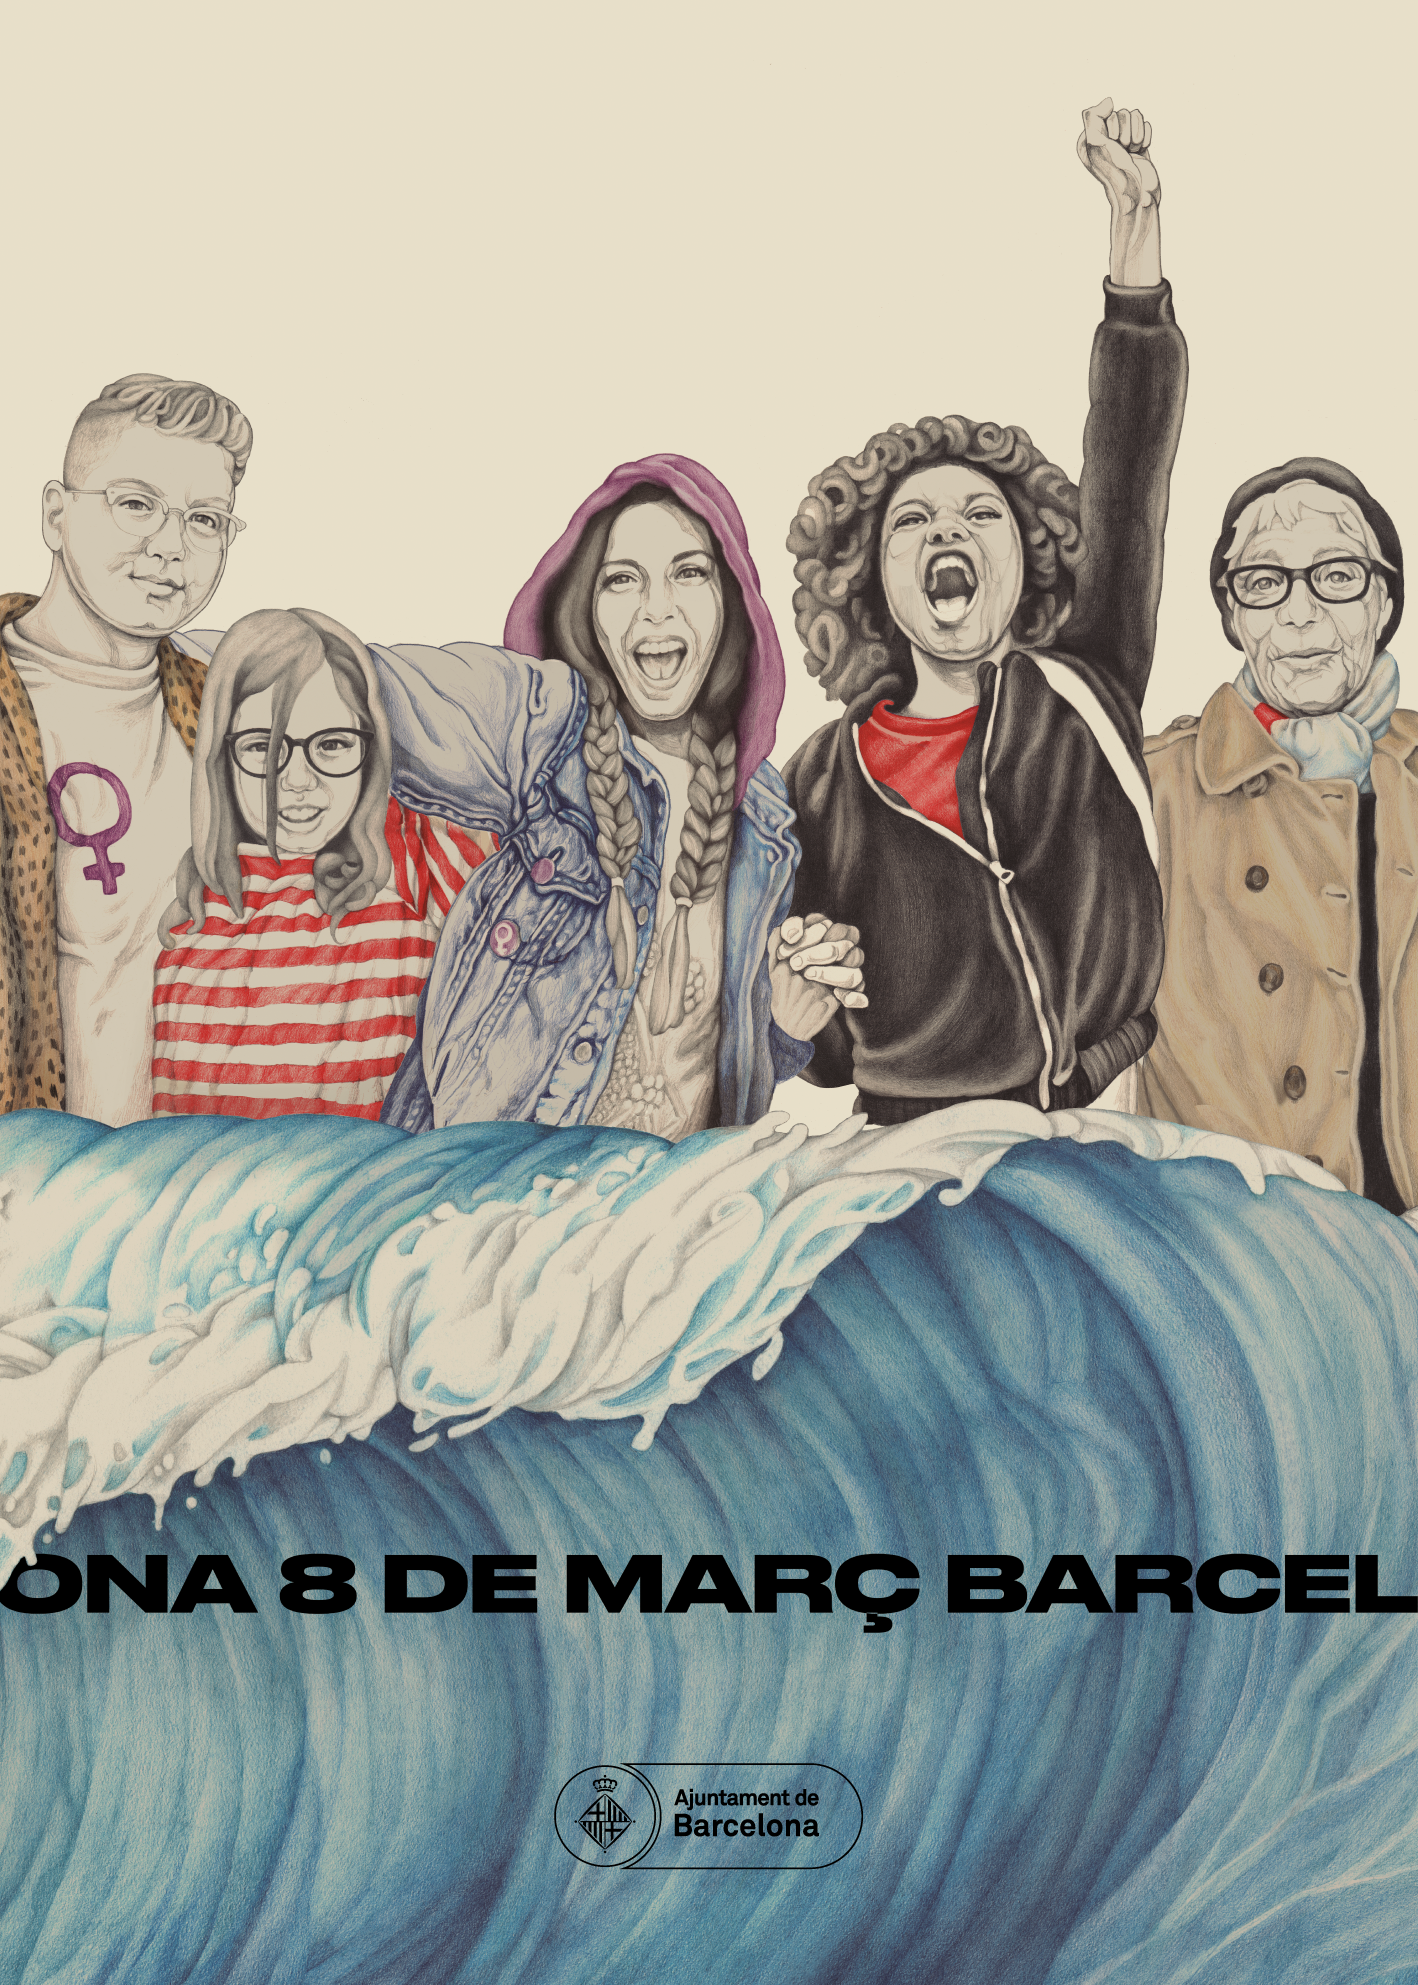 Cartel en el que puede verse a un grupo de mujeres que caminan juntas detrás de una ola, que representa una manifestación, con el texto “8 de marzo, Barcelona”. Ayuntamiento de Barcelona. 